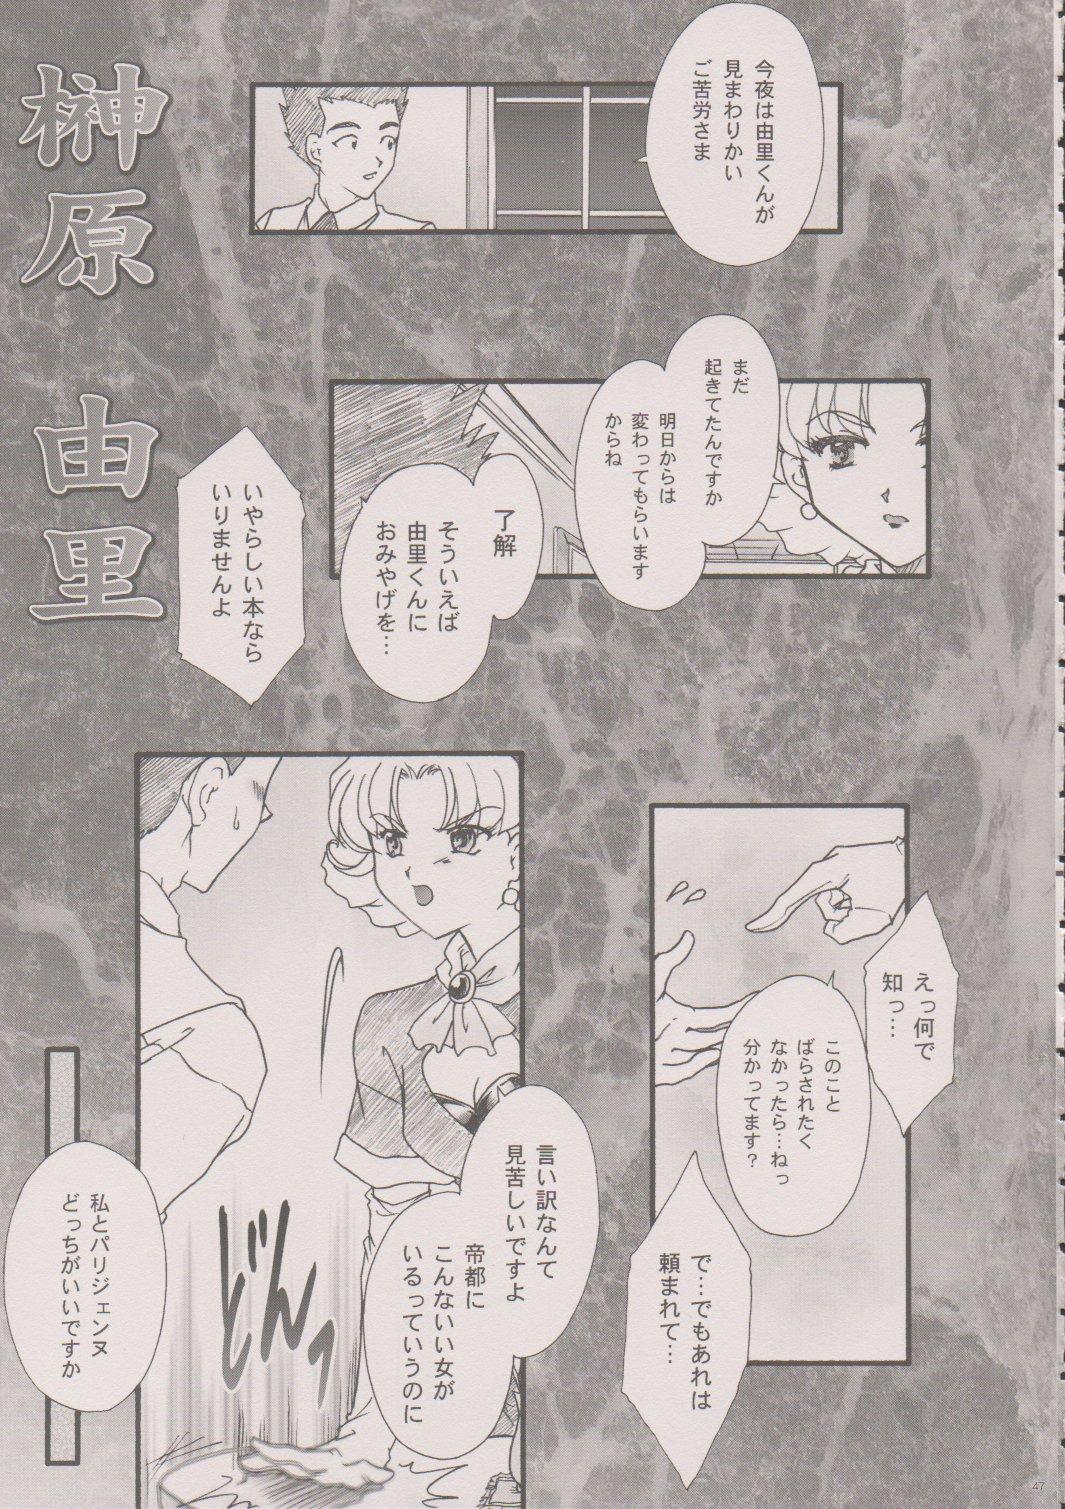 [TSK (Fuuga Utsura)] Maihime ~Karen~ 6 Teito Yori. (Sakura Wars) 45